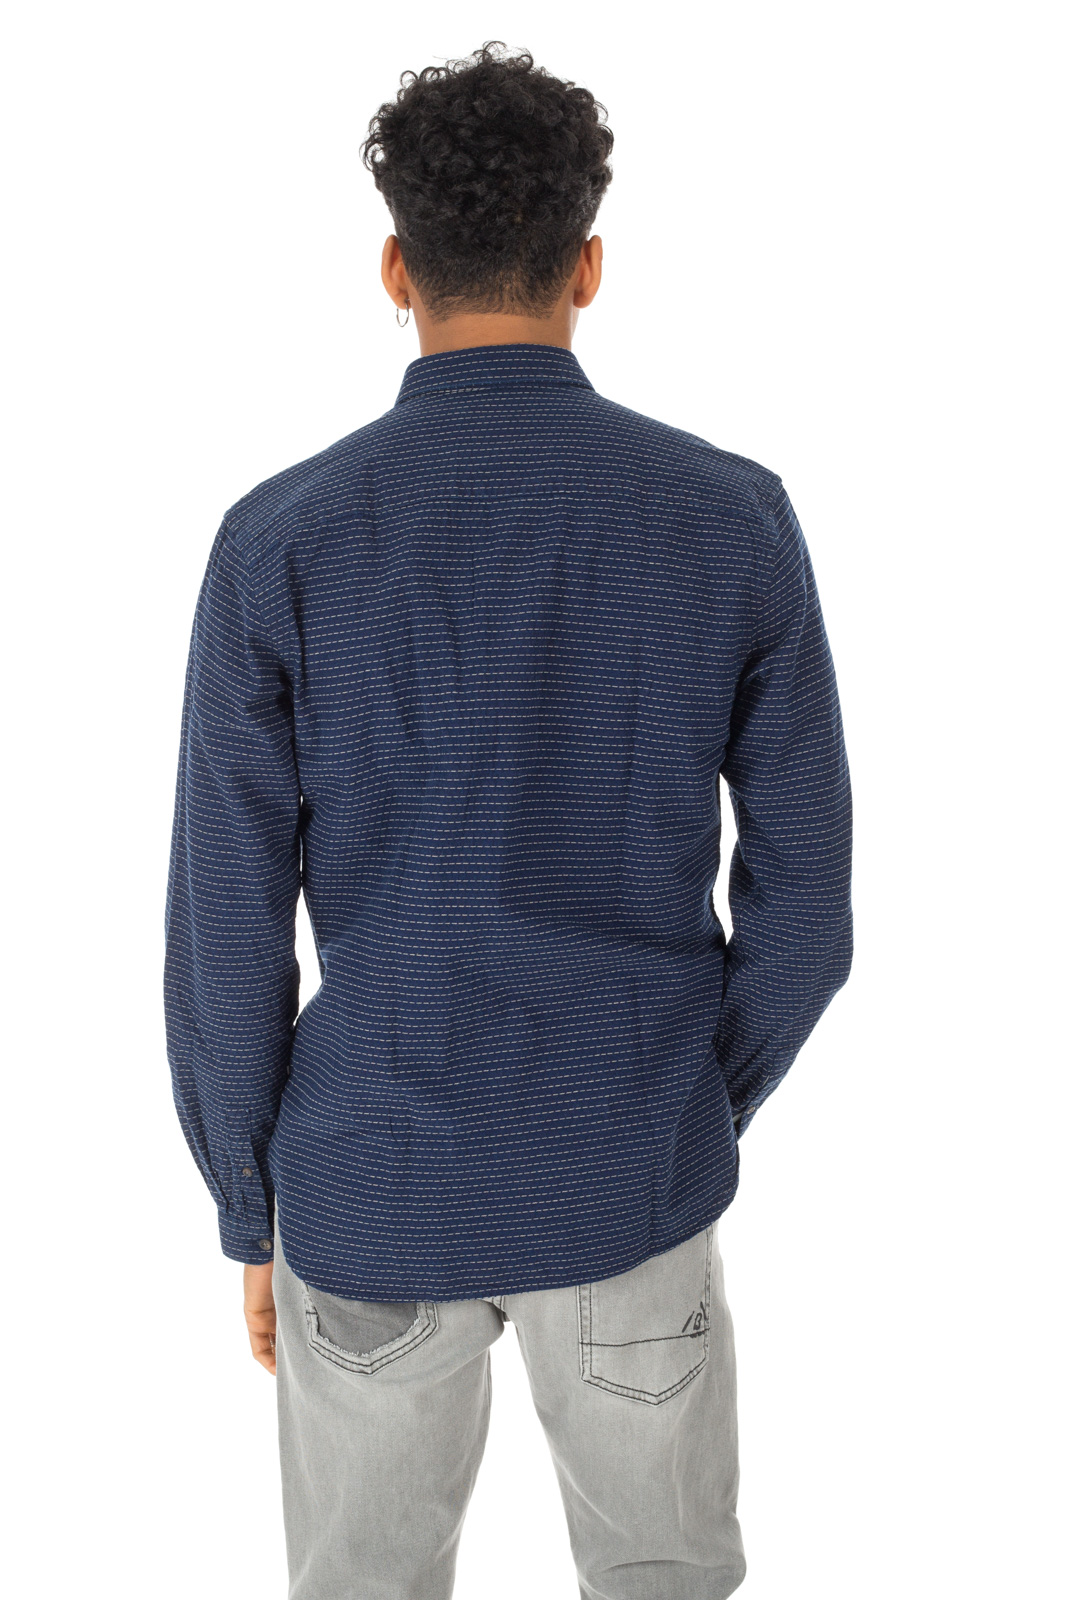 Minimum - Camicia Blu Crest Ricami